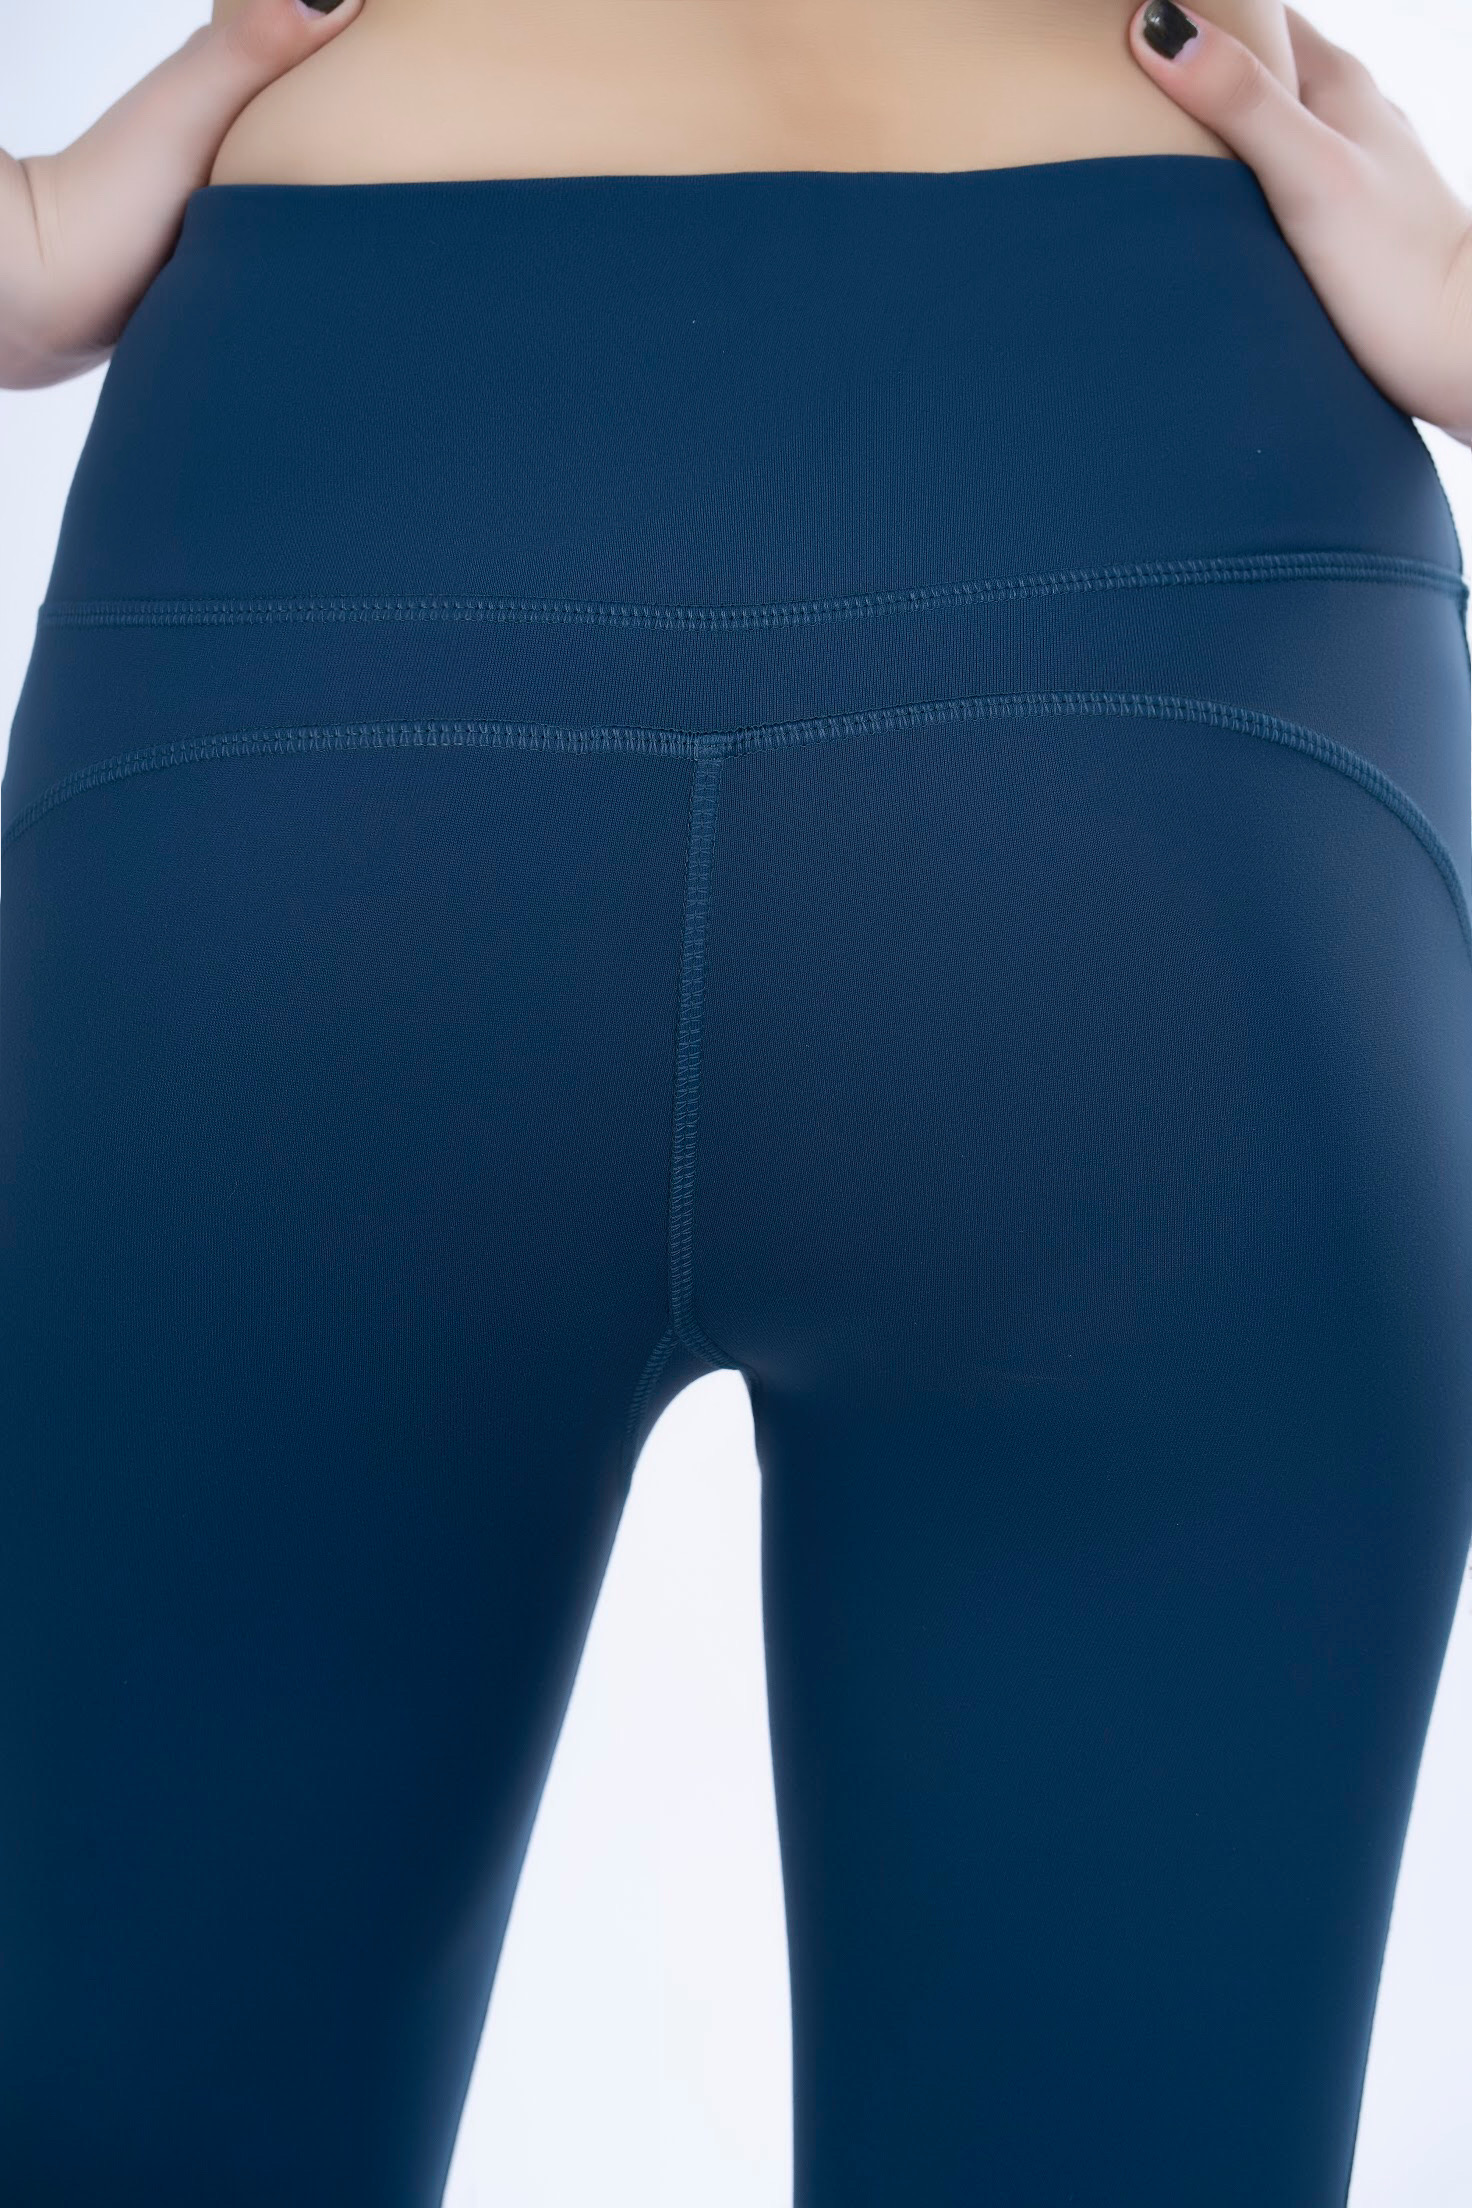 Bộ tập thể thao nữ áo croptop xanh quần lửng xanh - BTL03